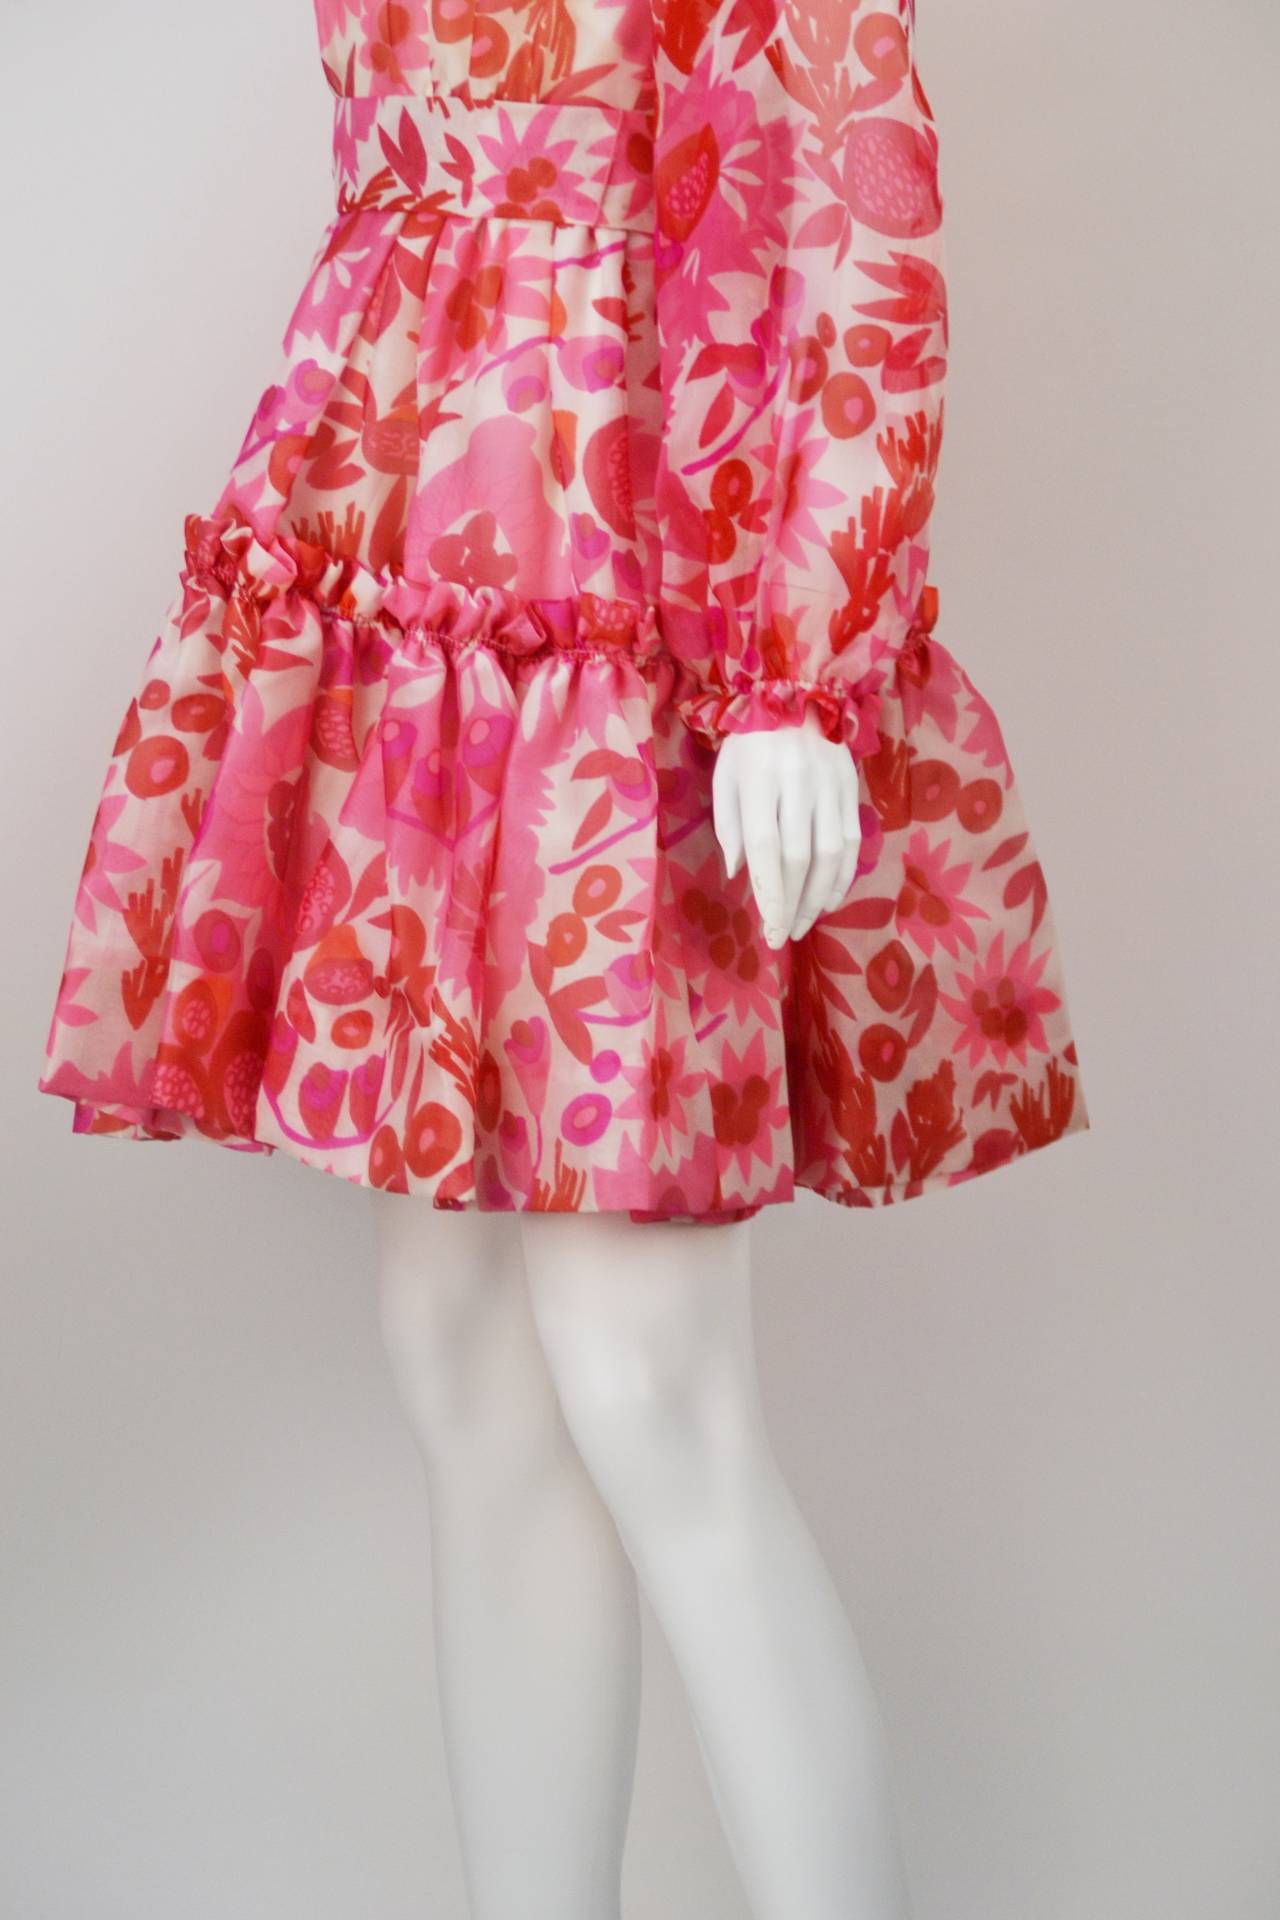 Women's 1960s Mollie Parnis Vivid Mini Dress